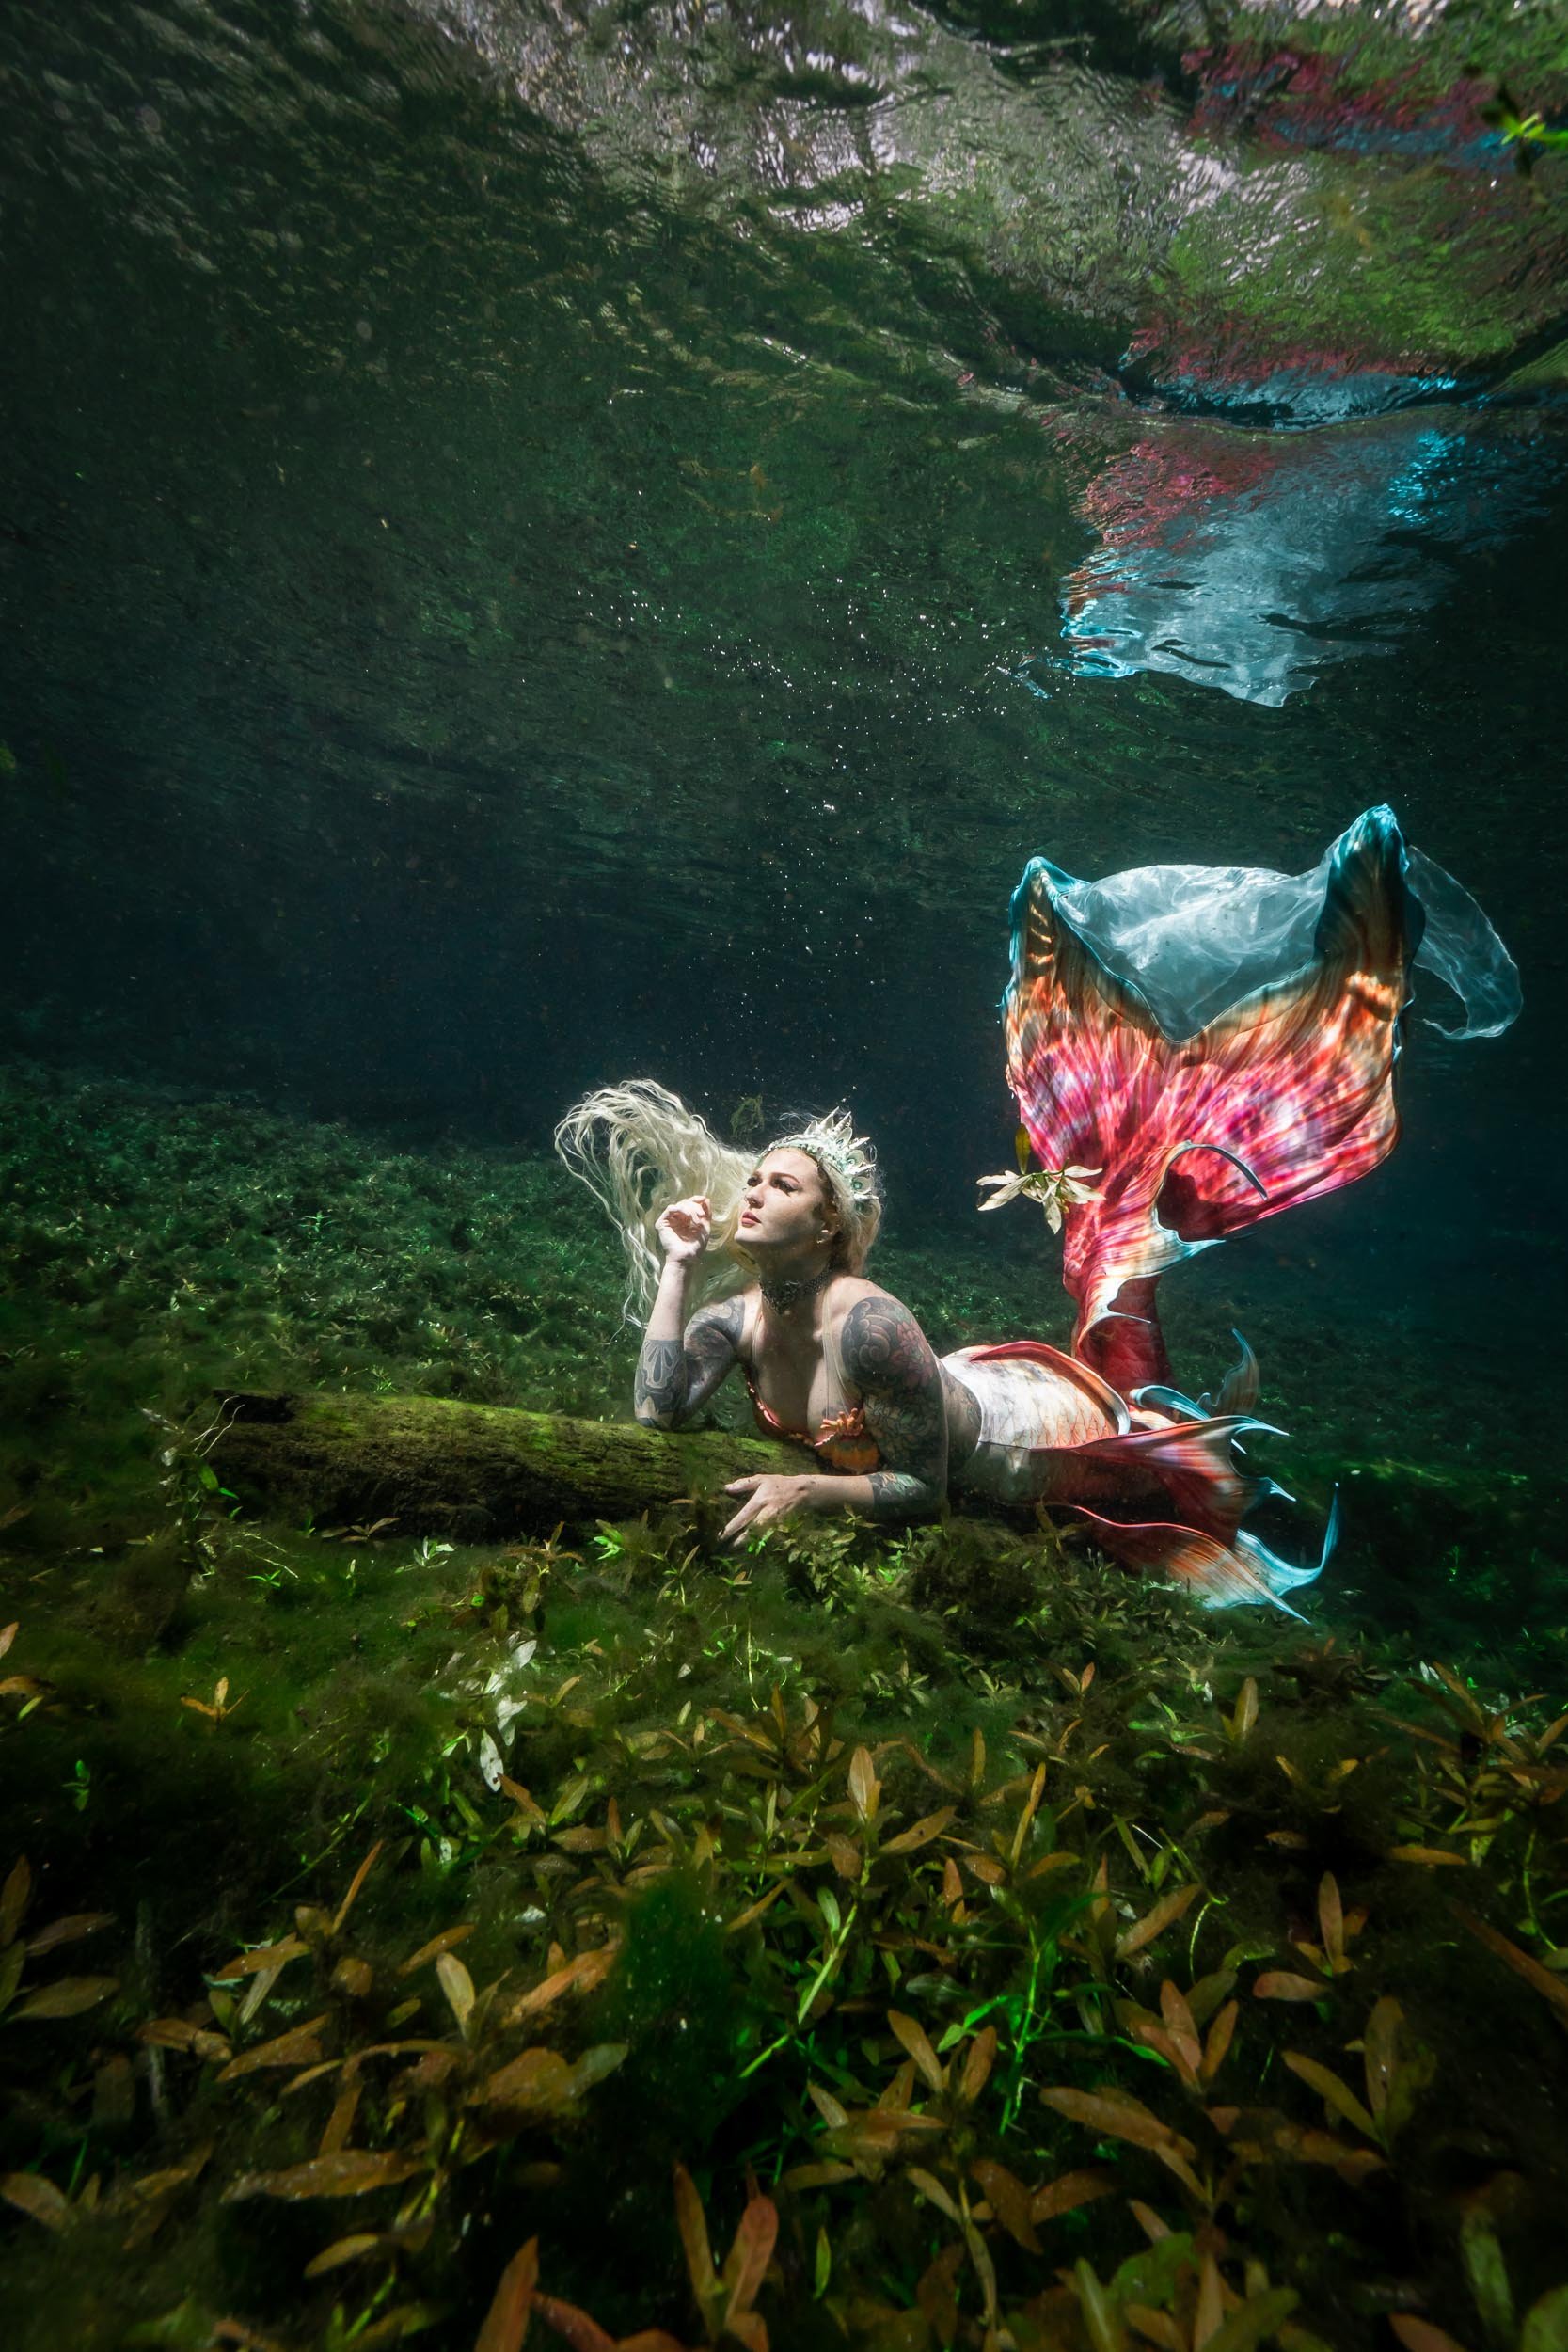 Mermaid Luna posing underwater